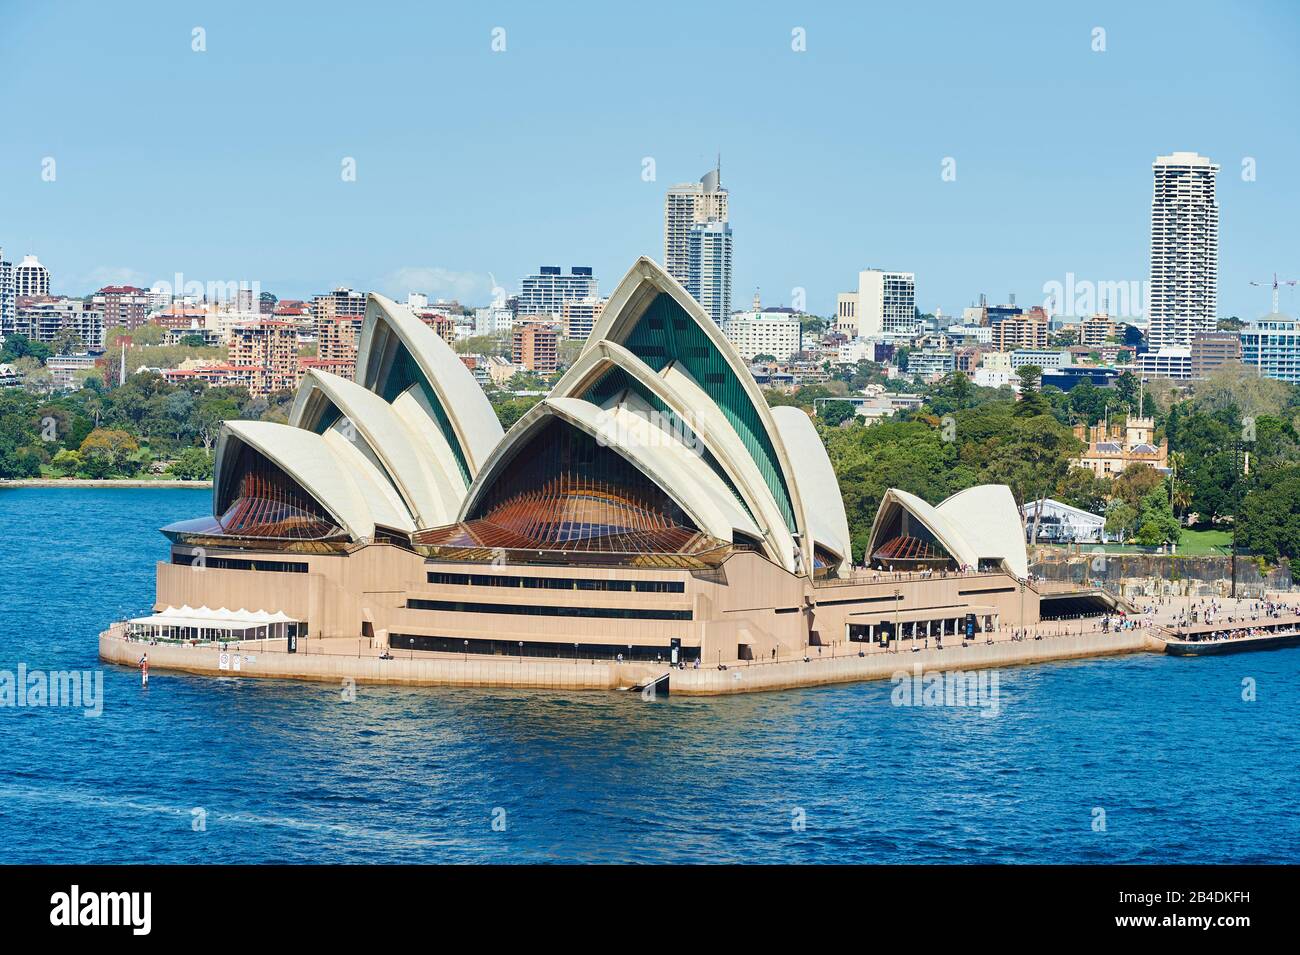 Paesaggio Dell'Opera House In Primavera, Sydney, Nuovo Galles Del Sud, Australia, Oceania Foto Stock